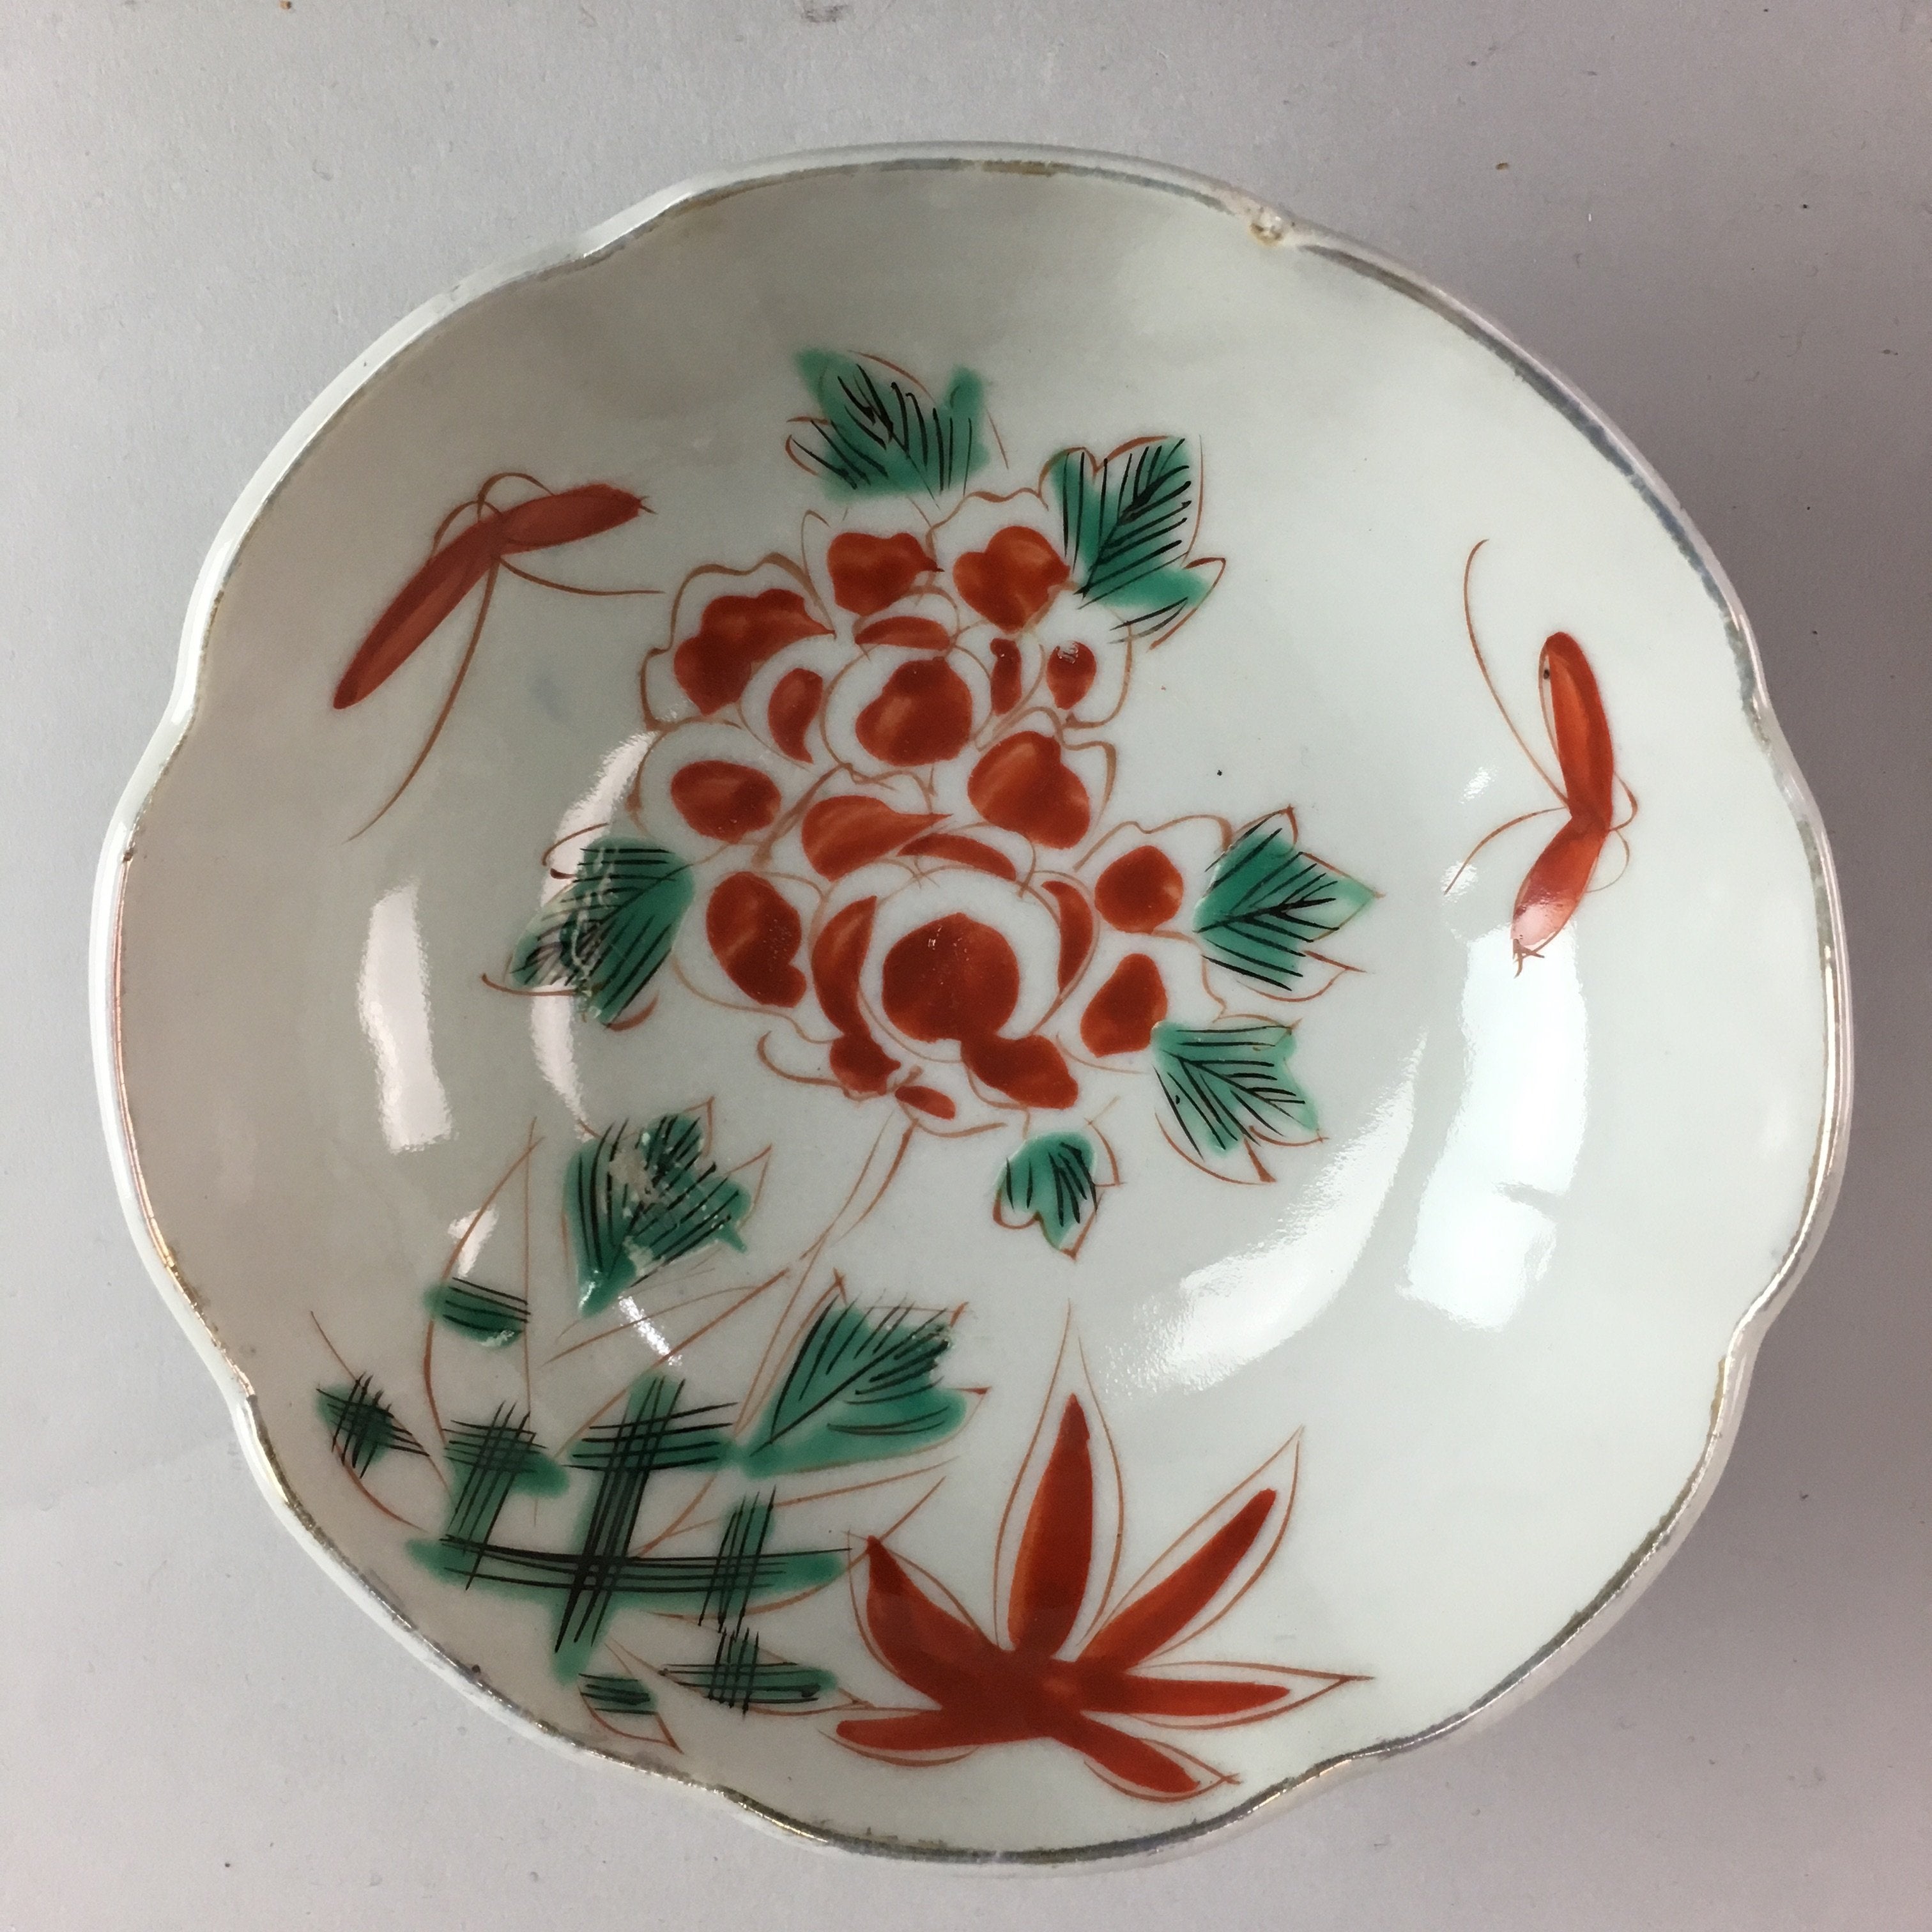 Japanese Porcelain Bowl Vtg Kobachi C1930 Floral Butterfly Design PT425